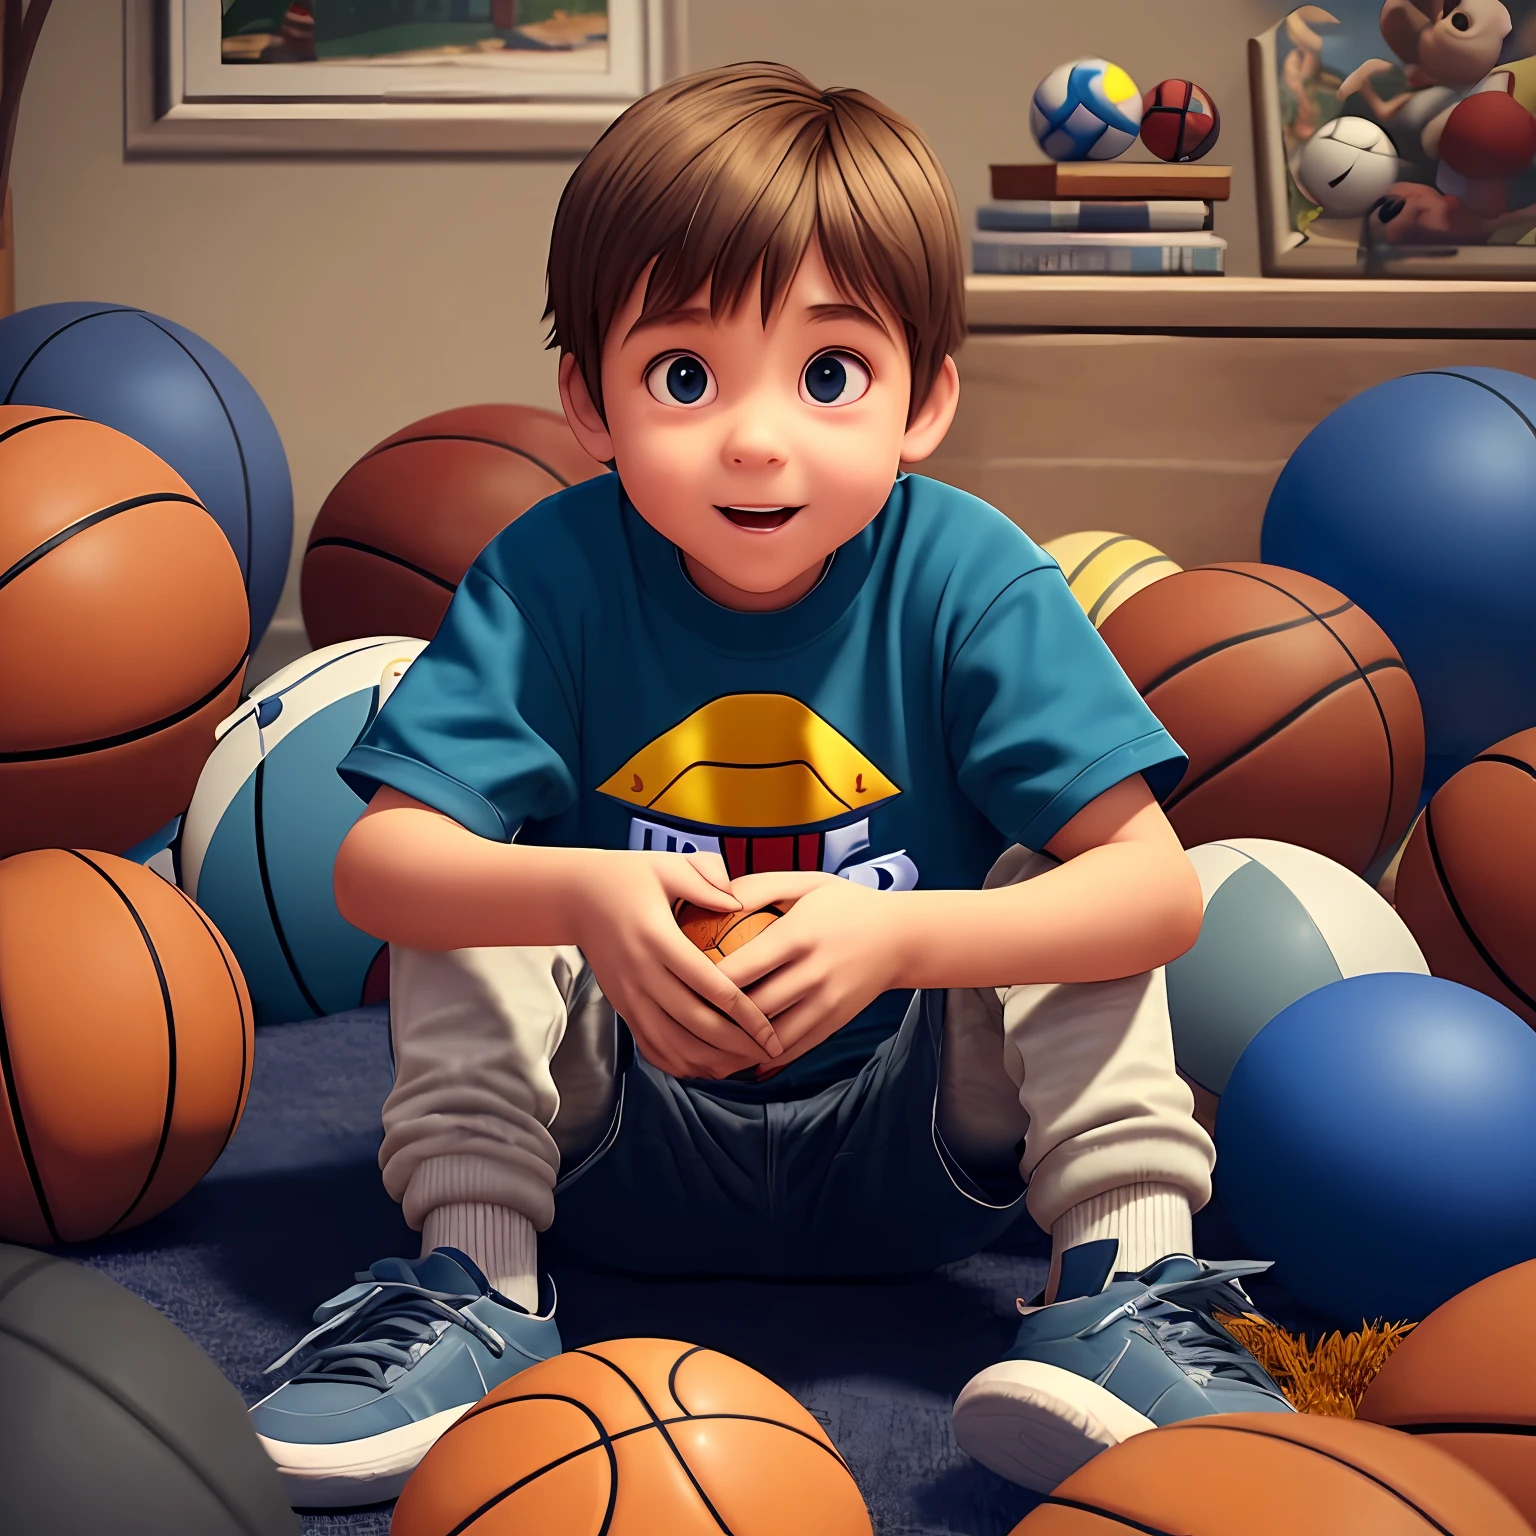 방에 앉아 있는 앞에서 본 어린 소년, 많은 농구공에 둘러싸여, 픽사 스타일, 3D 스타일, 디즈니 스타일, 8K, 귀여운 --자동